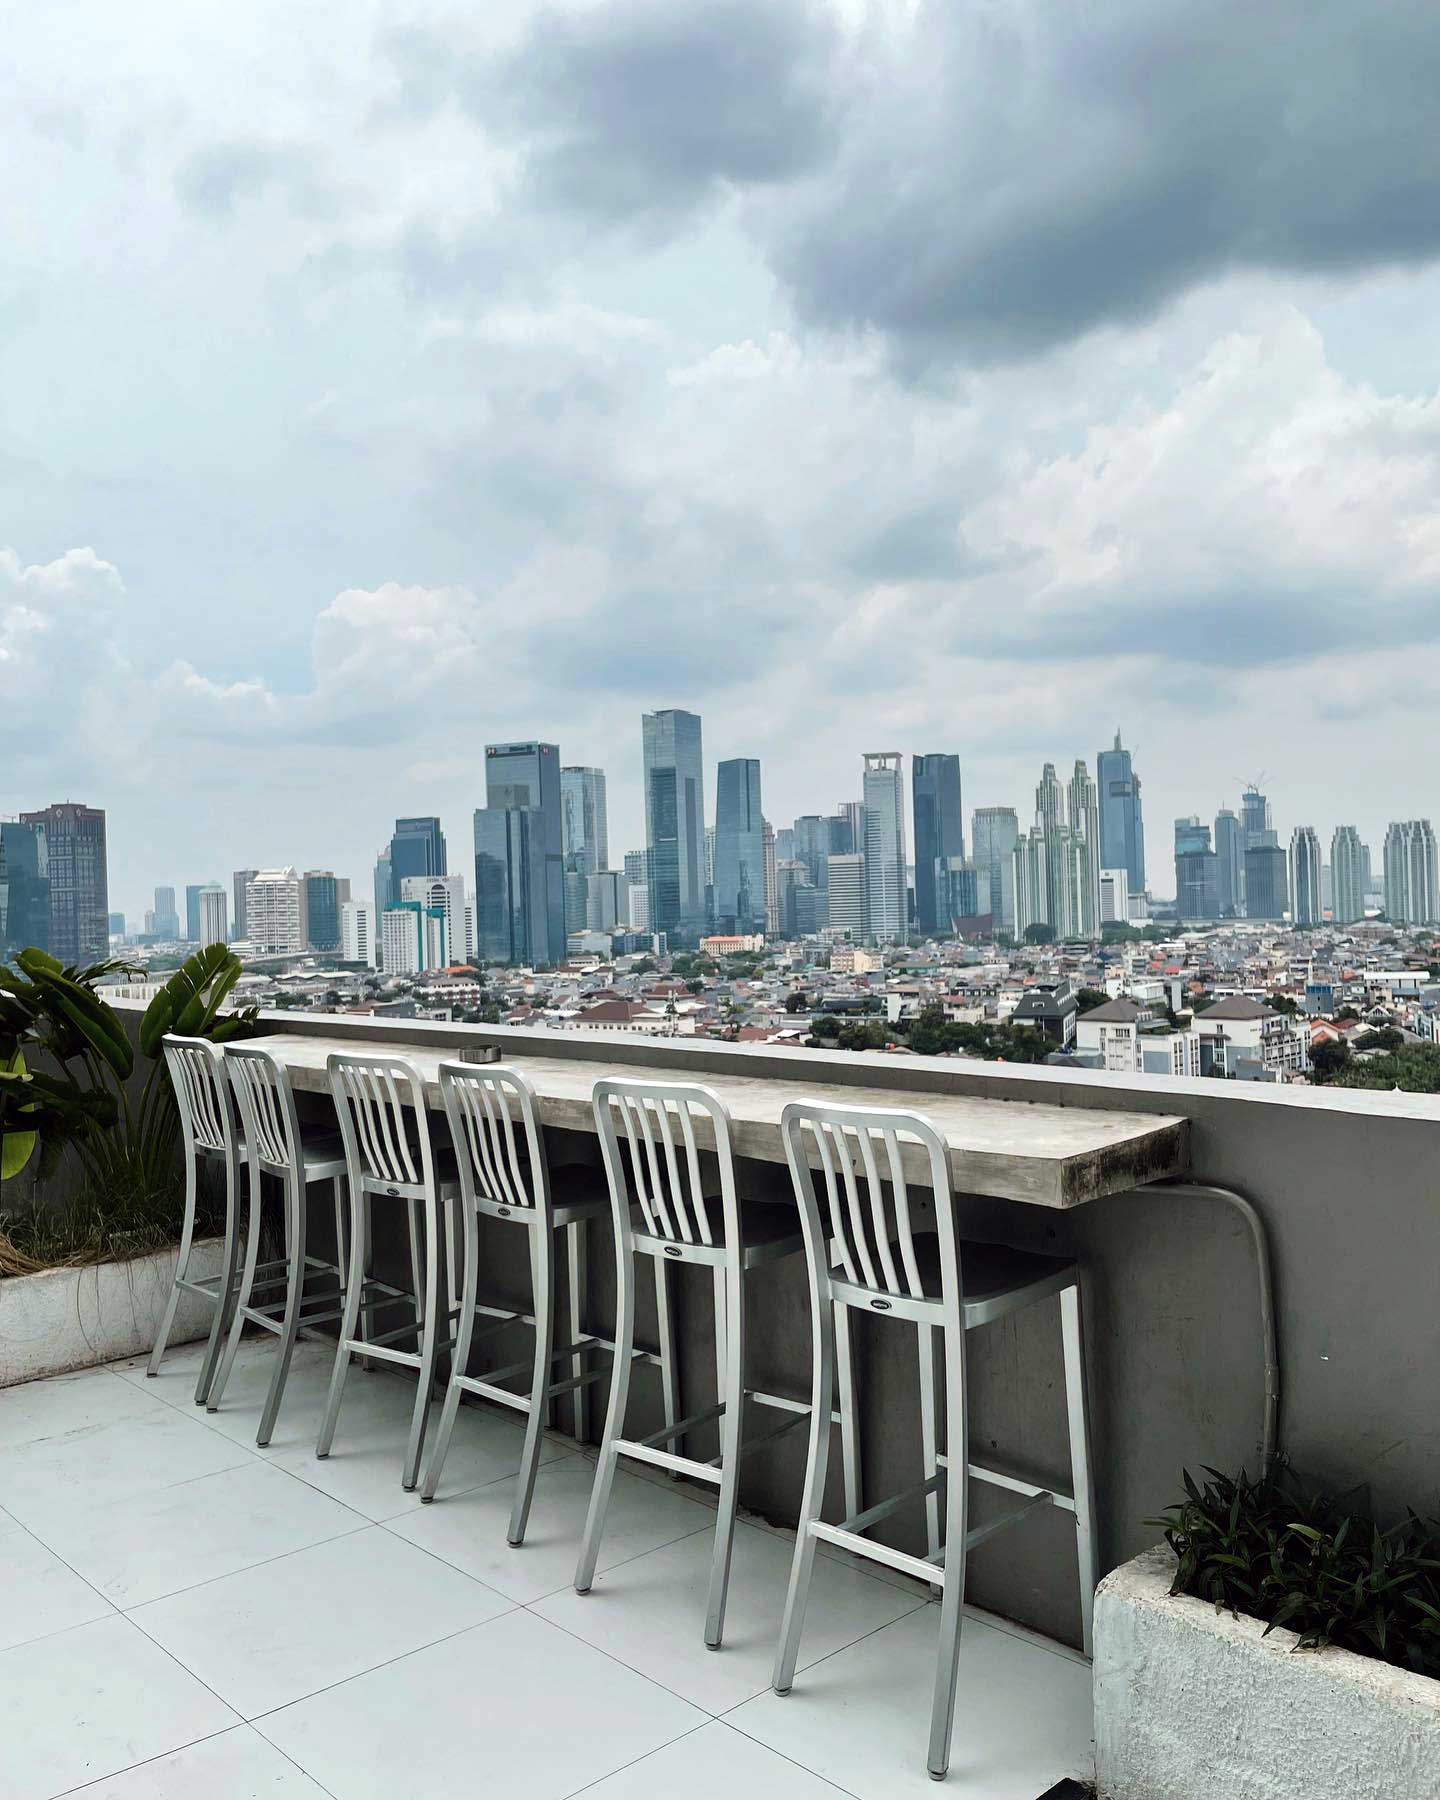 Cafe Rooftop Jakarta Kobain Coffee Image From @coffeeineseeker